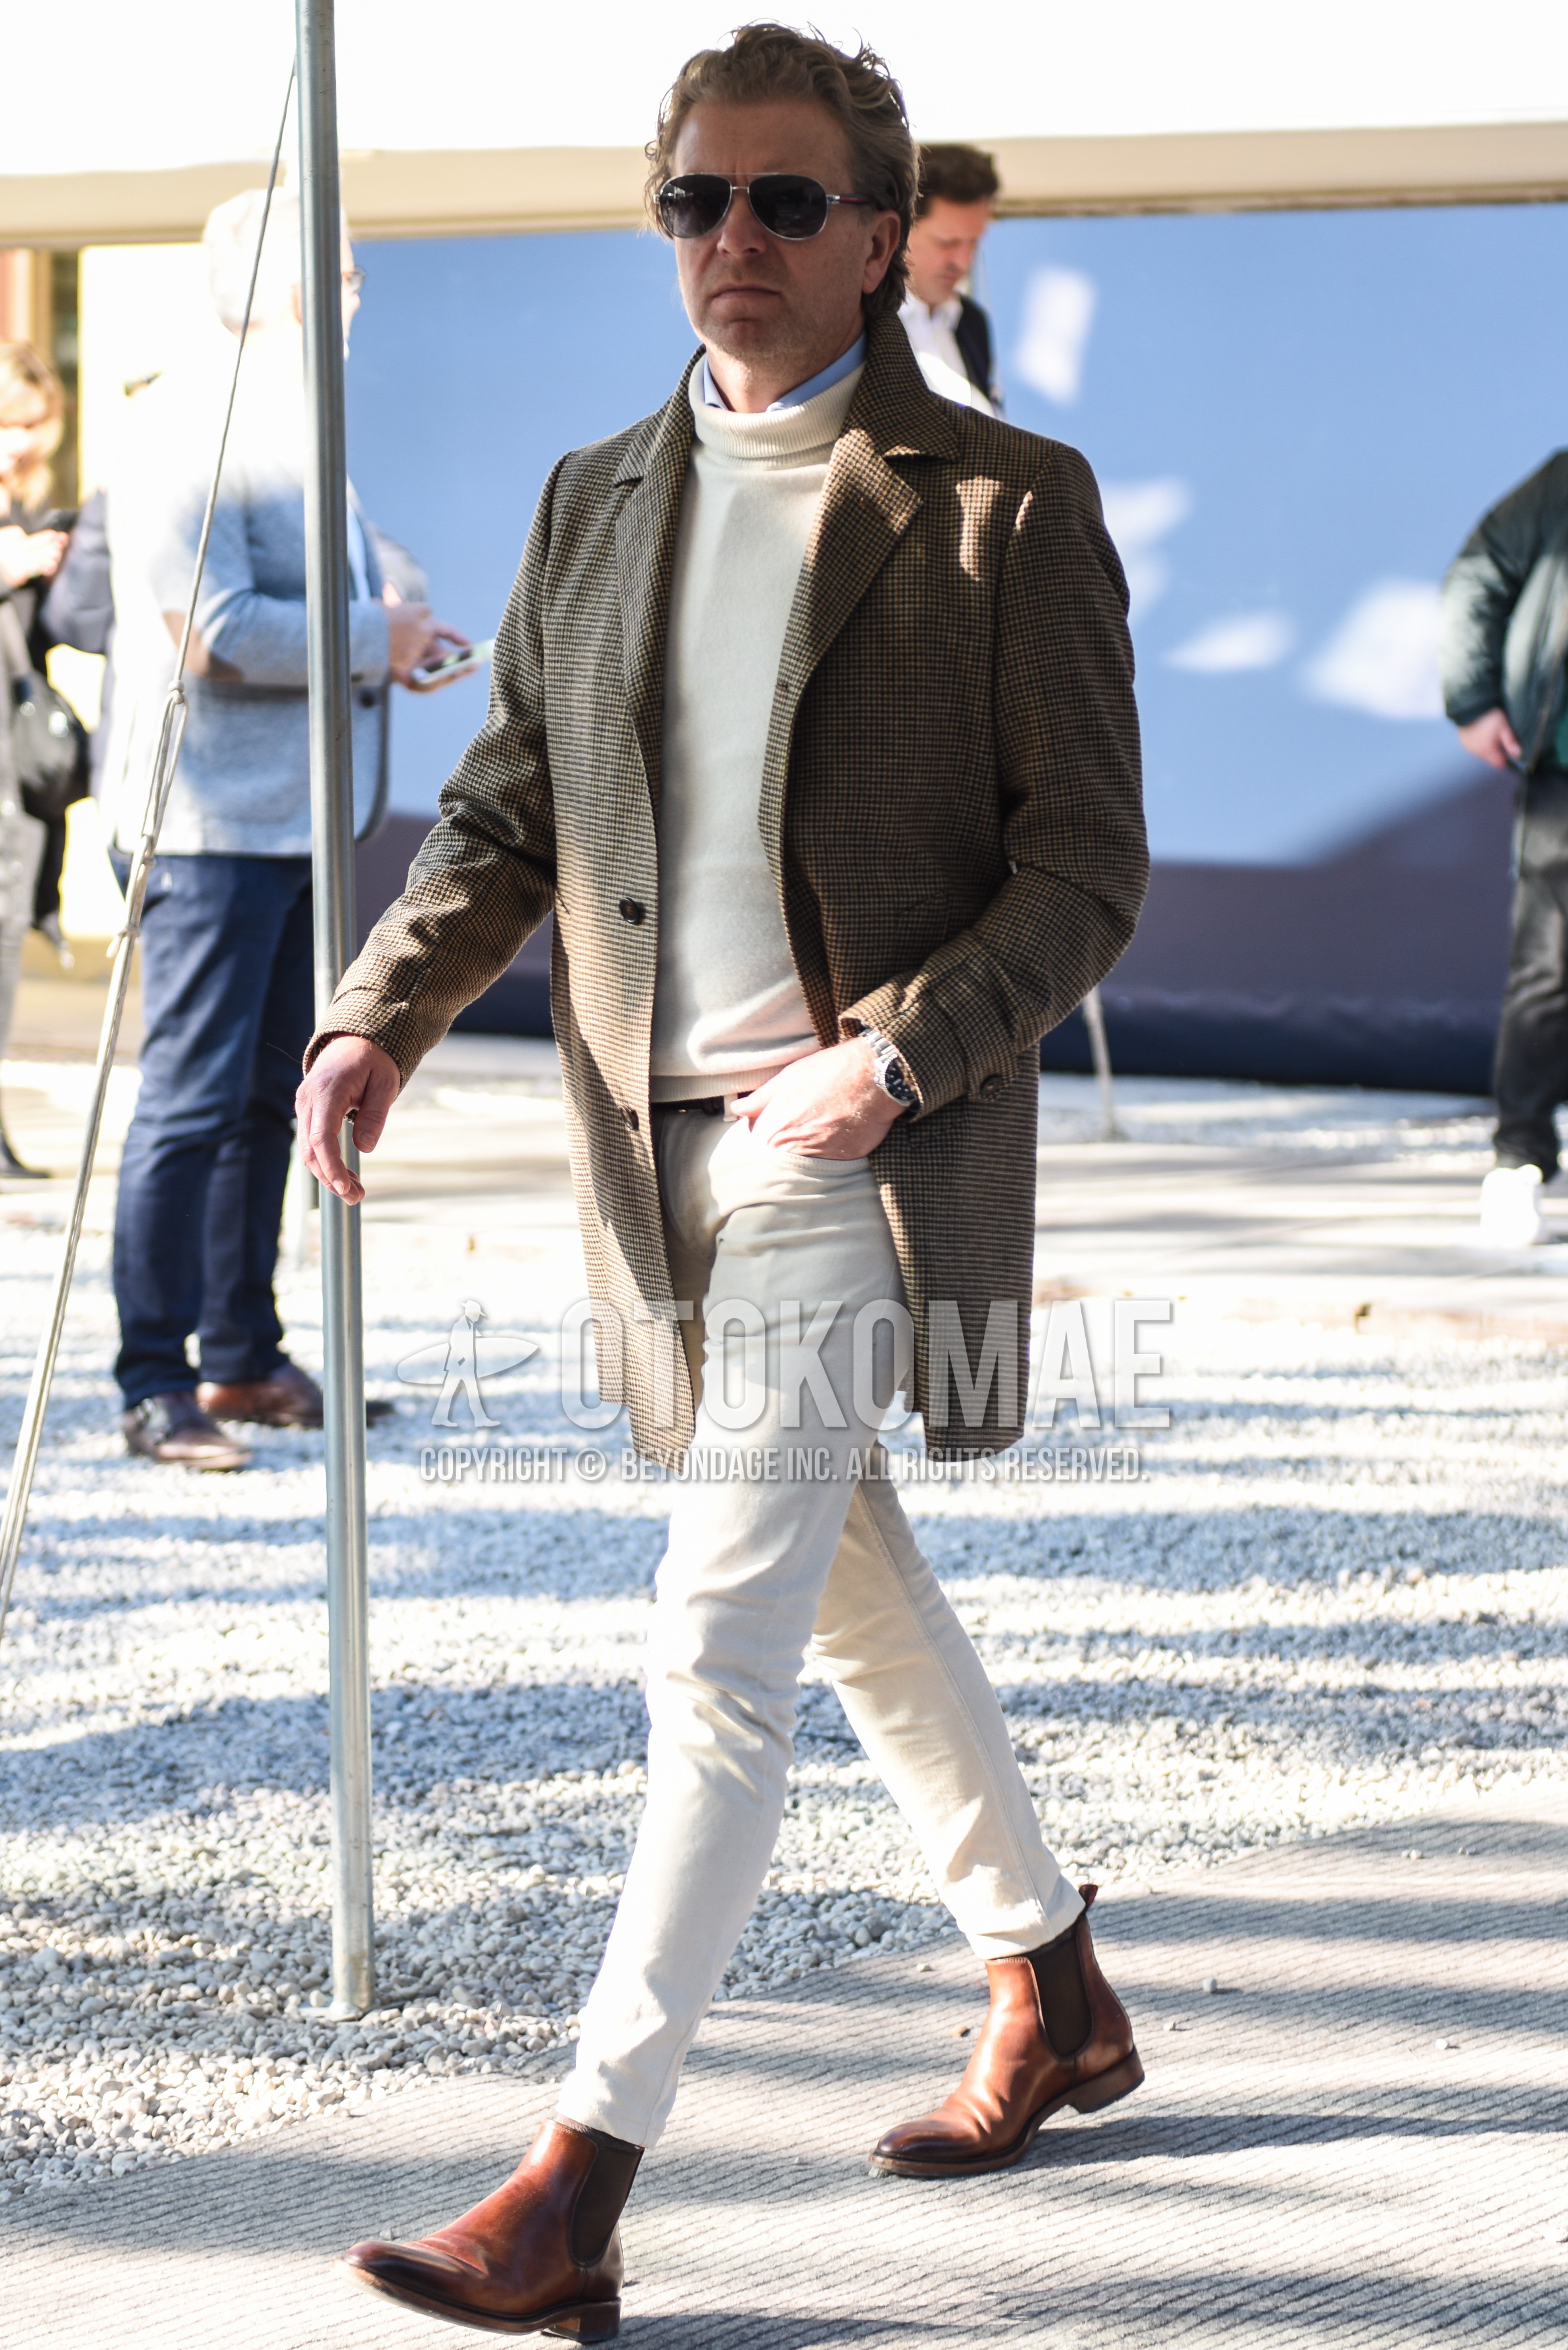 Men's autumn winter outfit with silver plain sunglasses, gray check chester coat, white plain turtleneck knit, light blue plain shirt, white plain cotton pants, white plain cropped pants, brown side-gore boots.